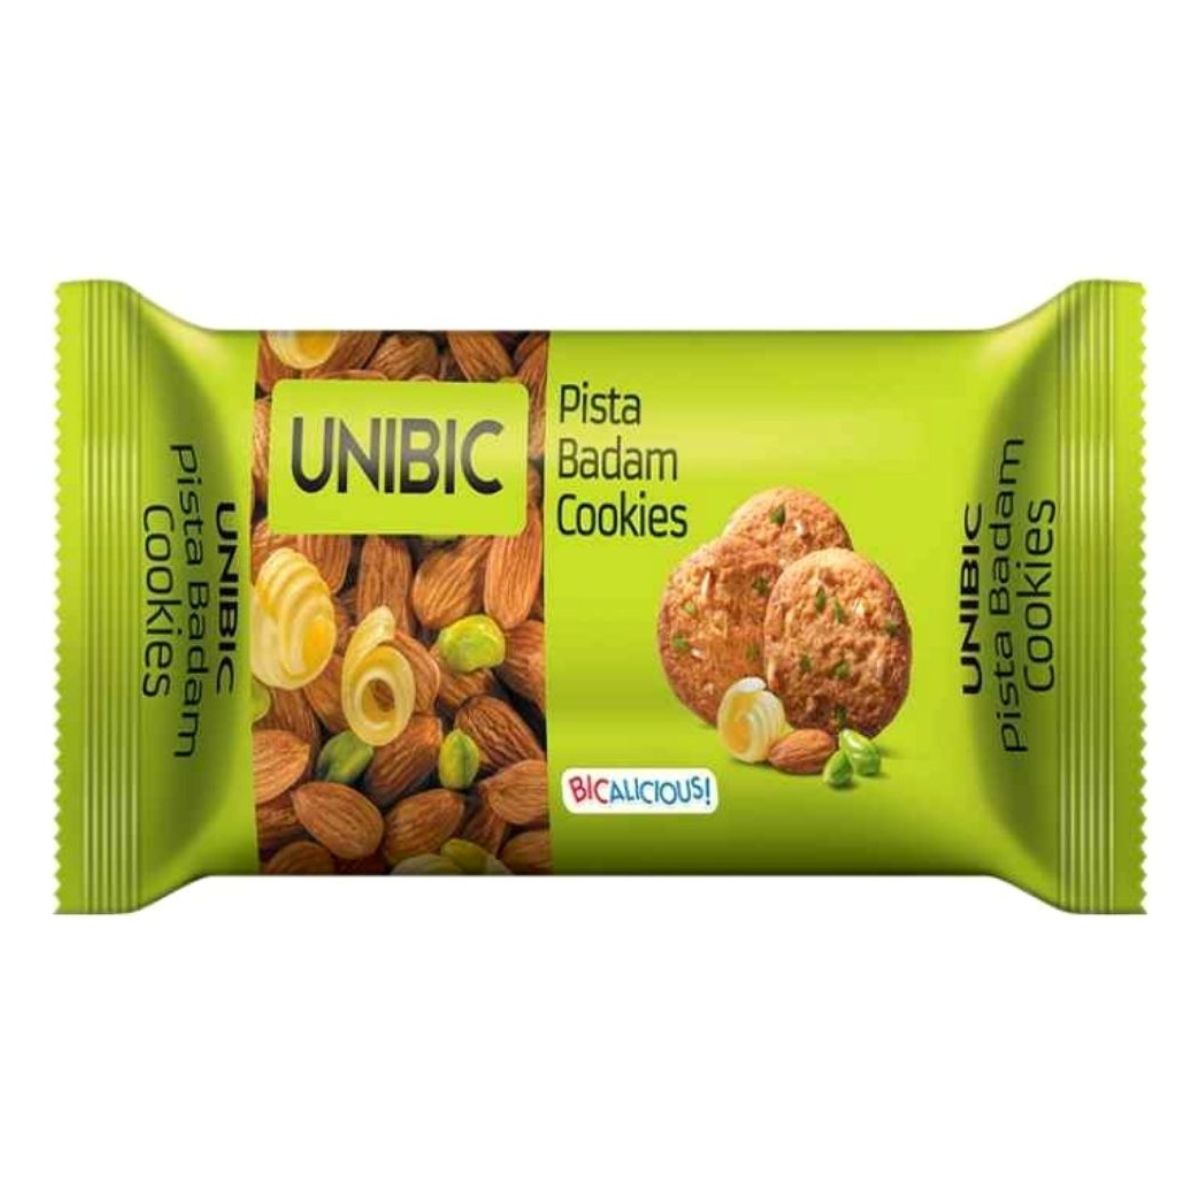 Unibic - Pista Badam Cookies - 150g